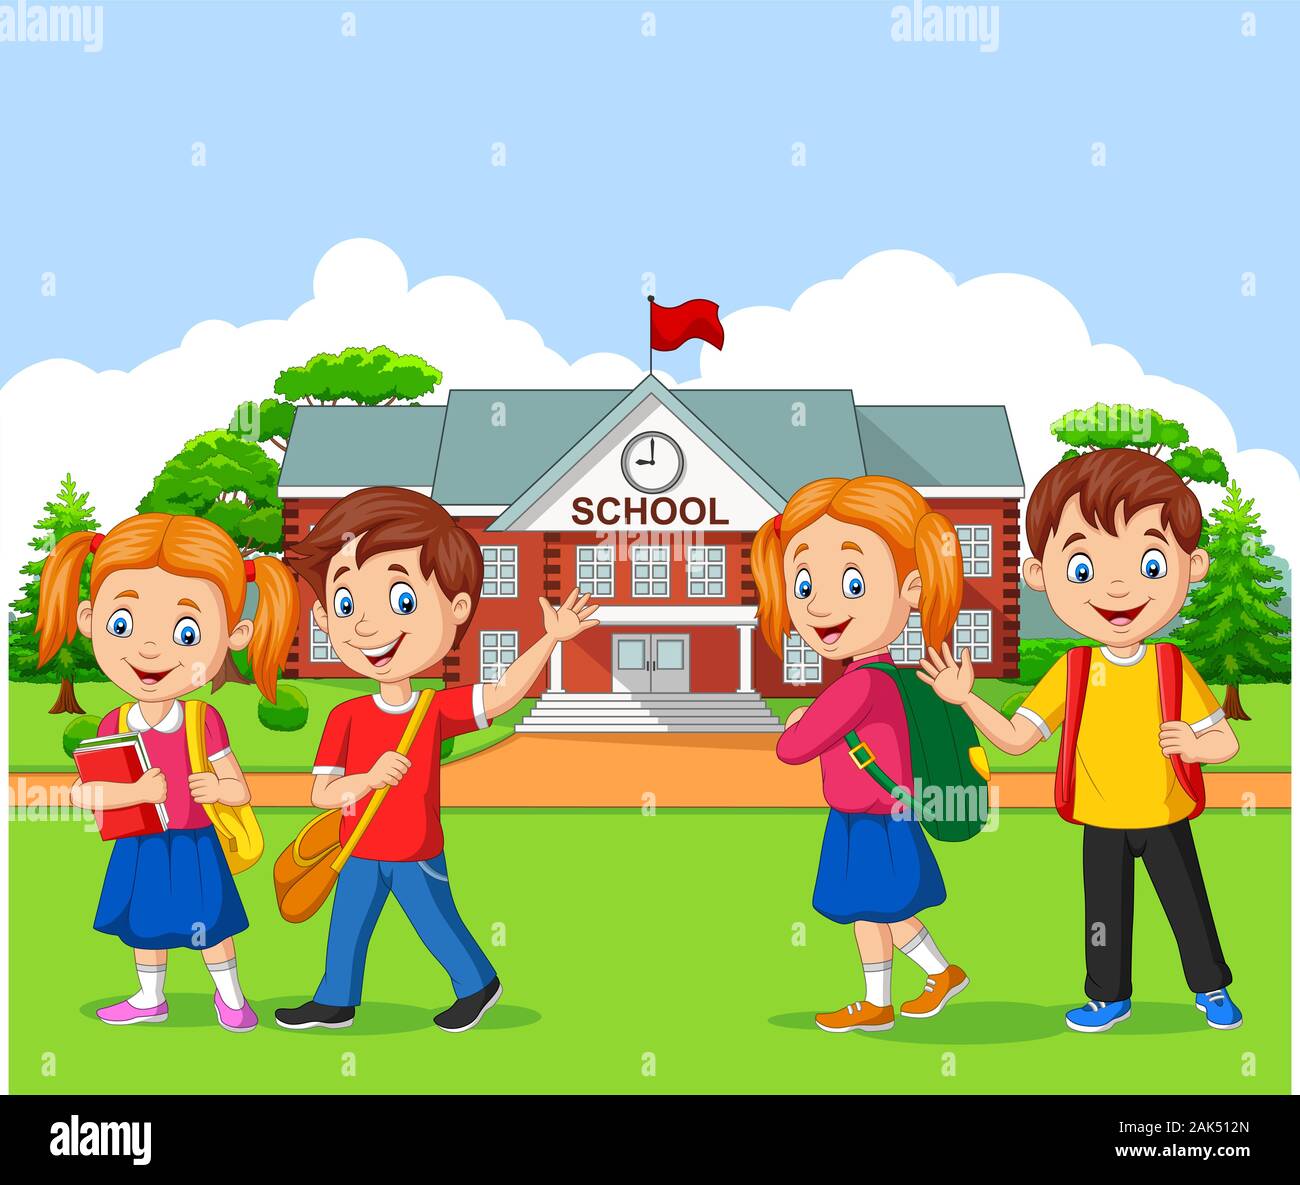 Happy School Children In Front Of The School Stock Vector Image Art Alamy